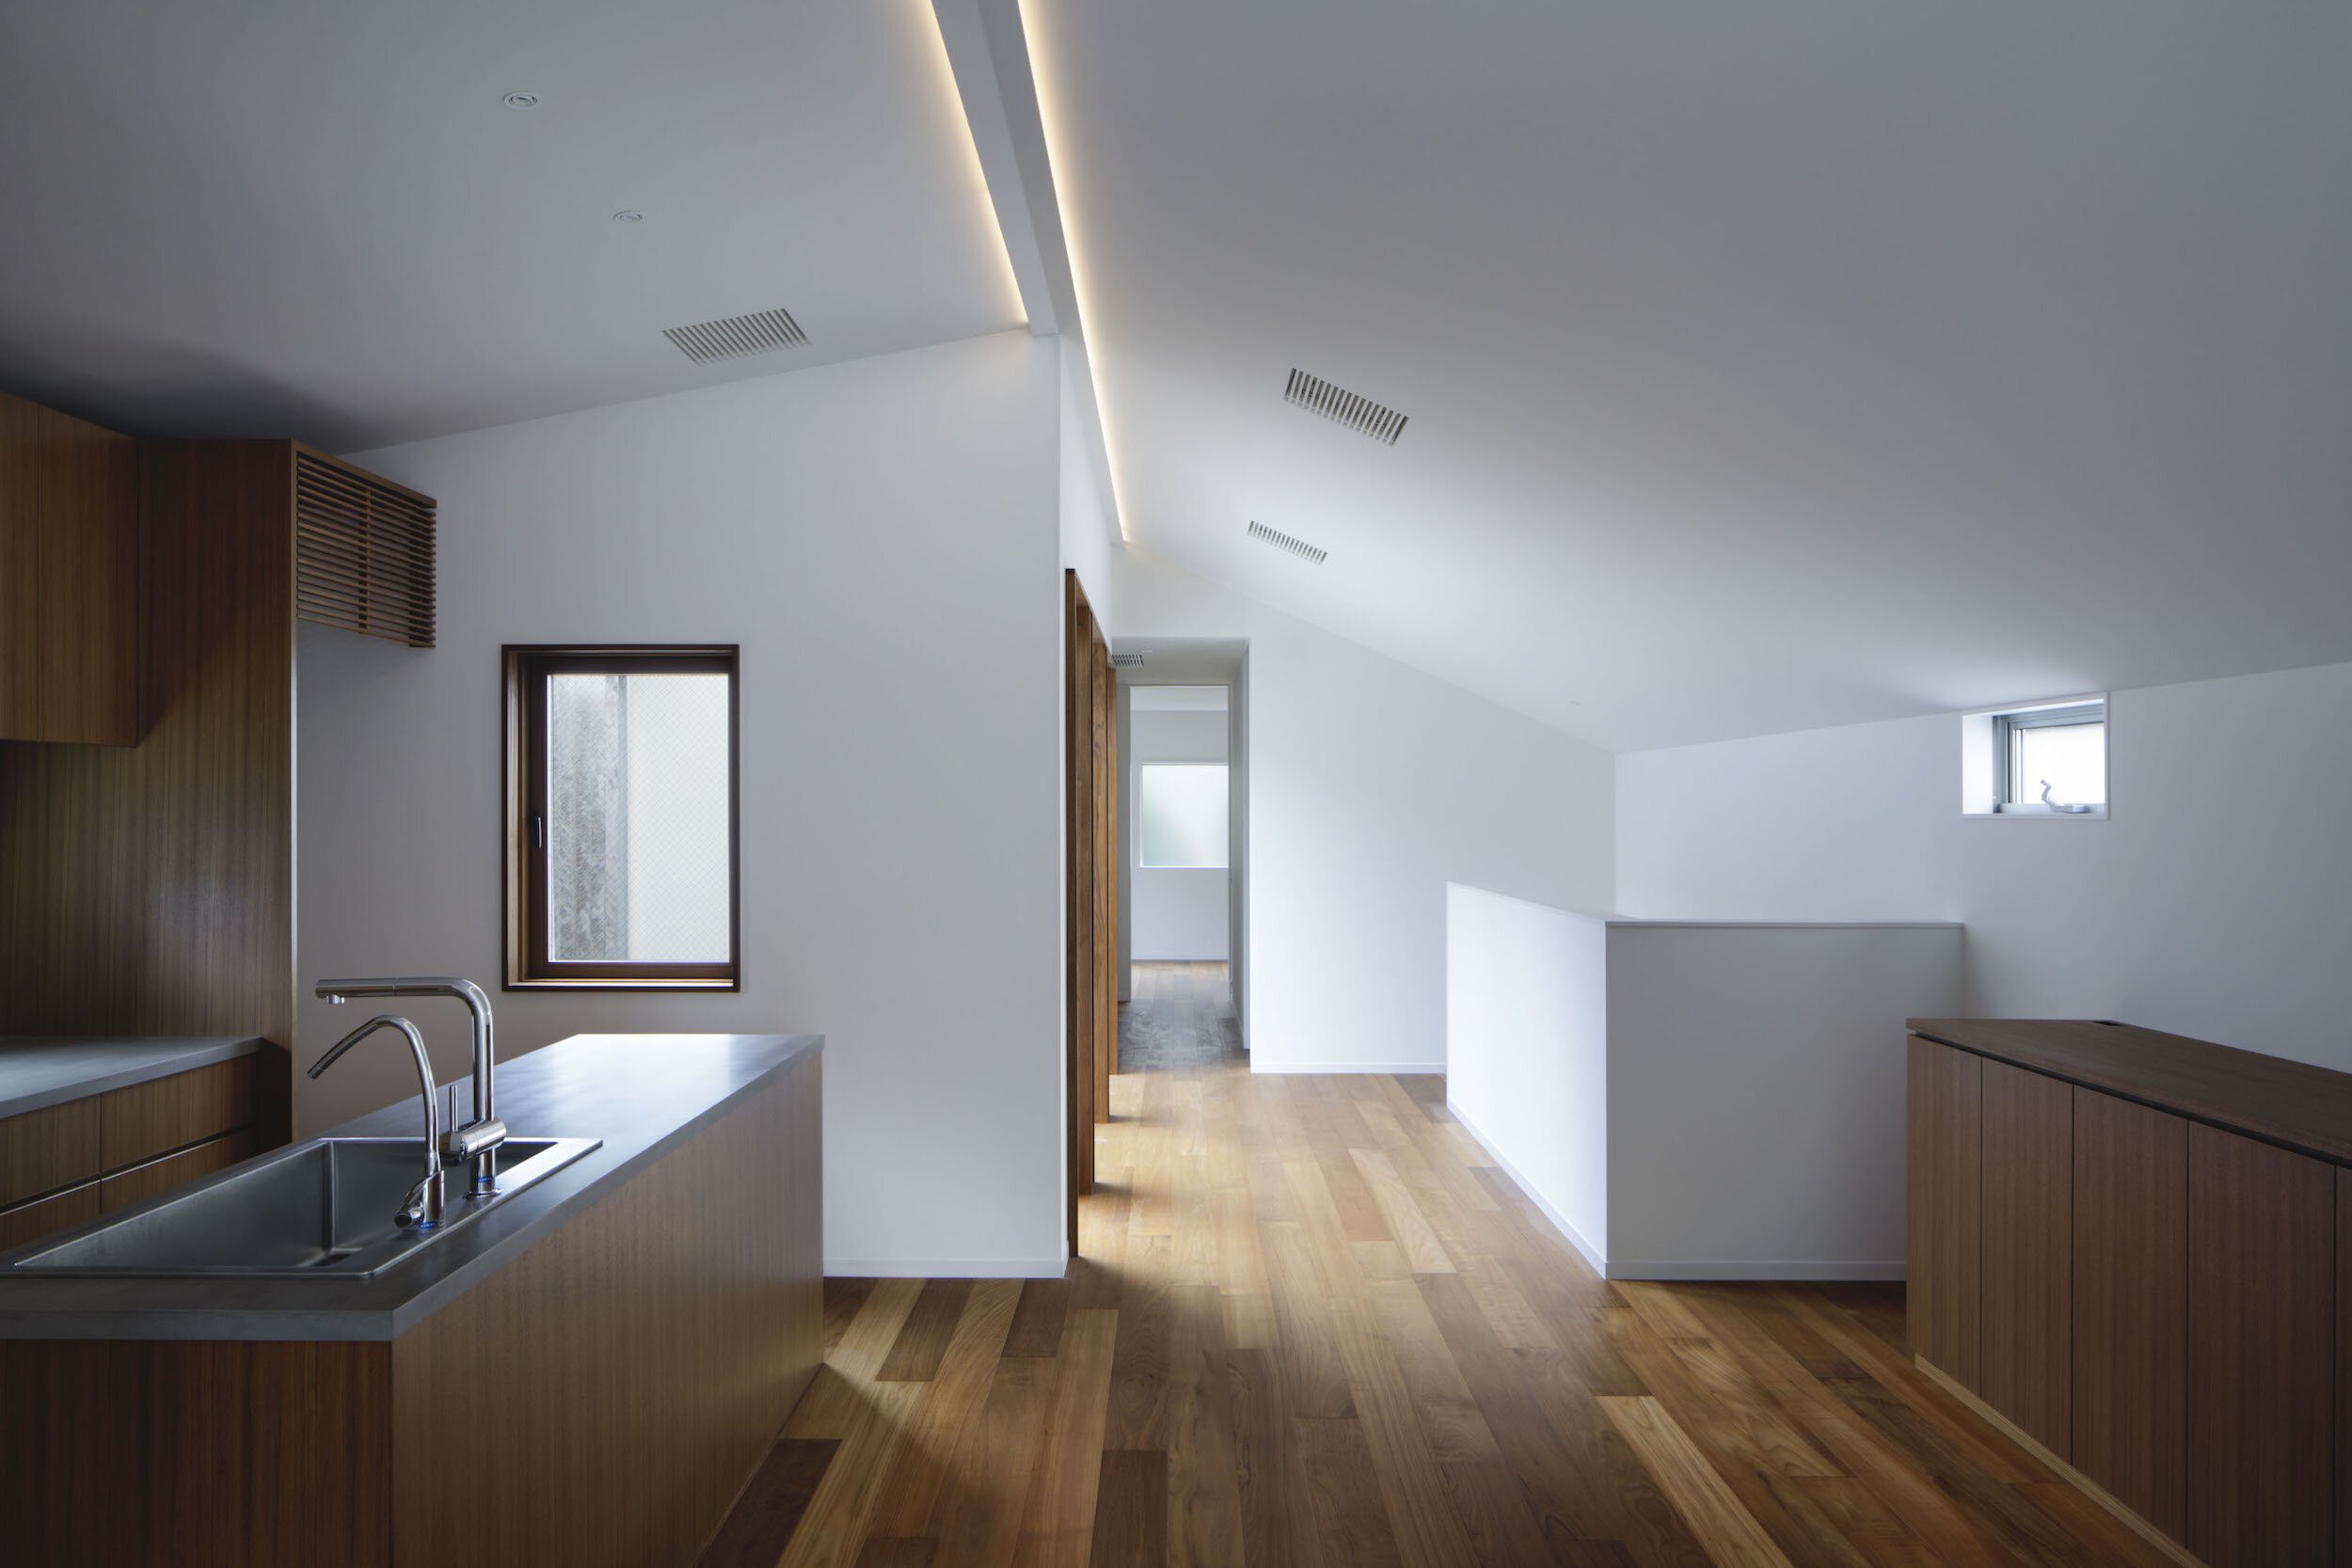  CASE-REAL（ケース・リアル）の二俣公一がデザインした住宅「東五反田の家」のインテリアデザイン 